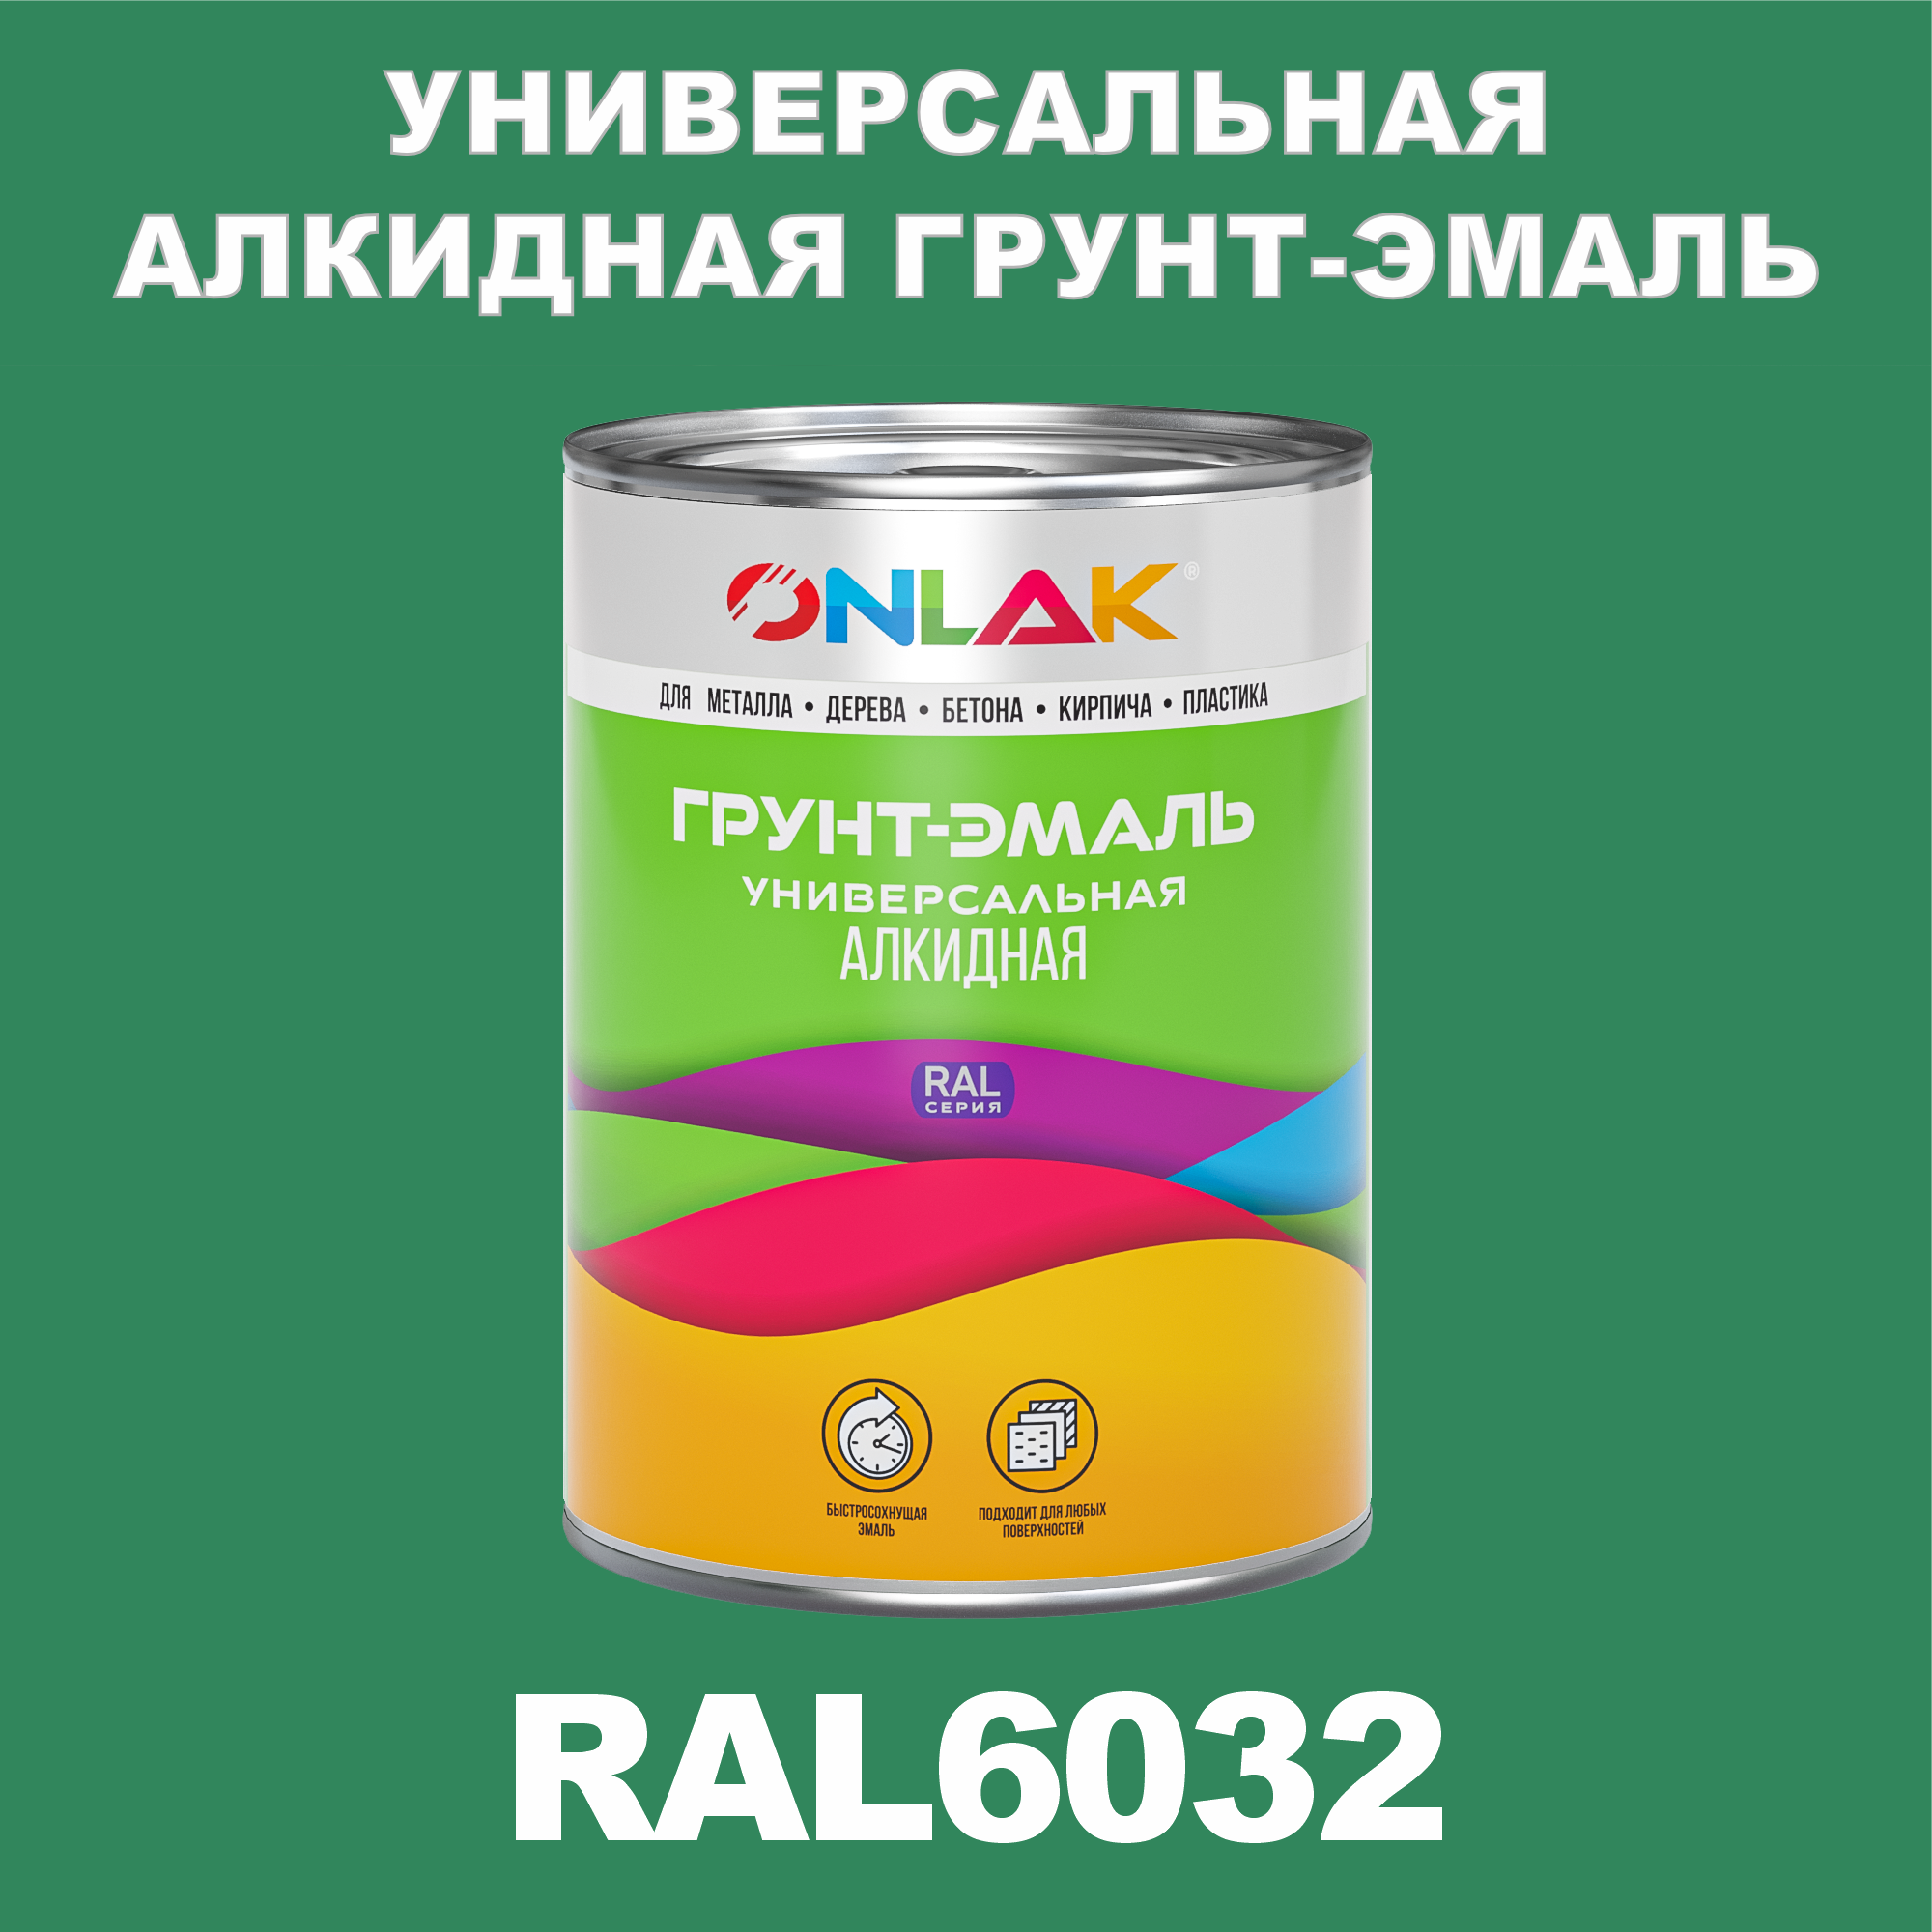 Грунт-эмаль ONLAK 1К RAL6032 антикоррозионная алкидная по металлу по ржавчине 1 кг